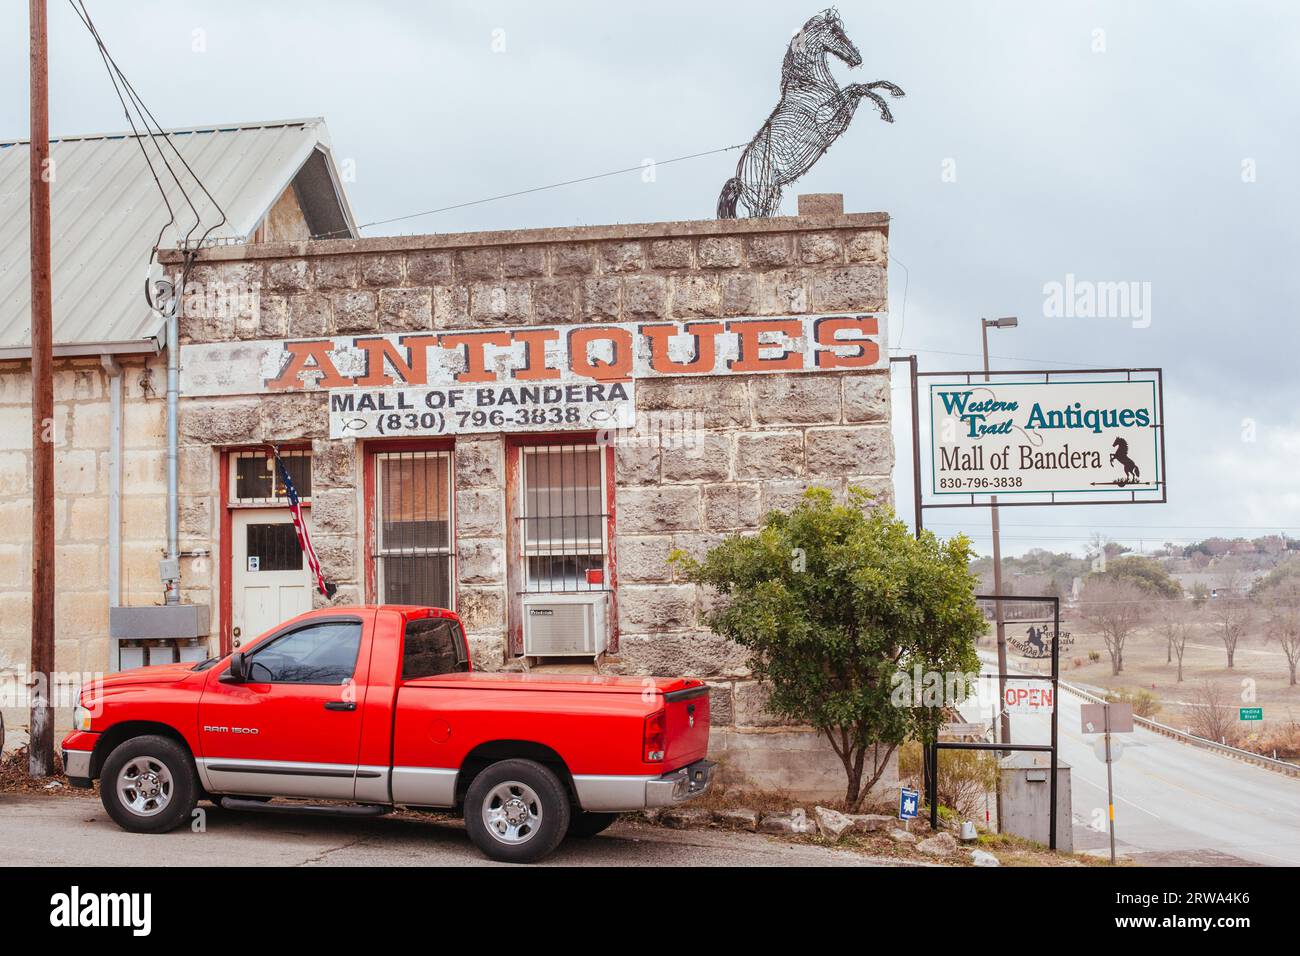 Bandera, USA, Januar 27 2019: Bandera ist eine kleine Stadt in Texas, die als „Cowboy-Hauptstadt der Welt“ gilt. Stockfoto